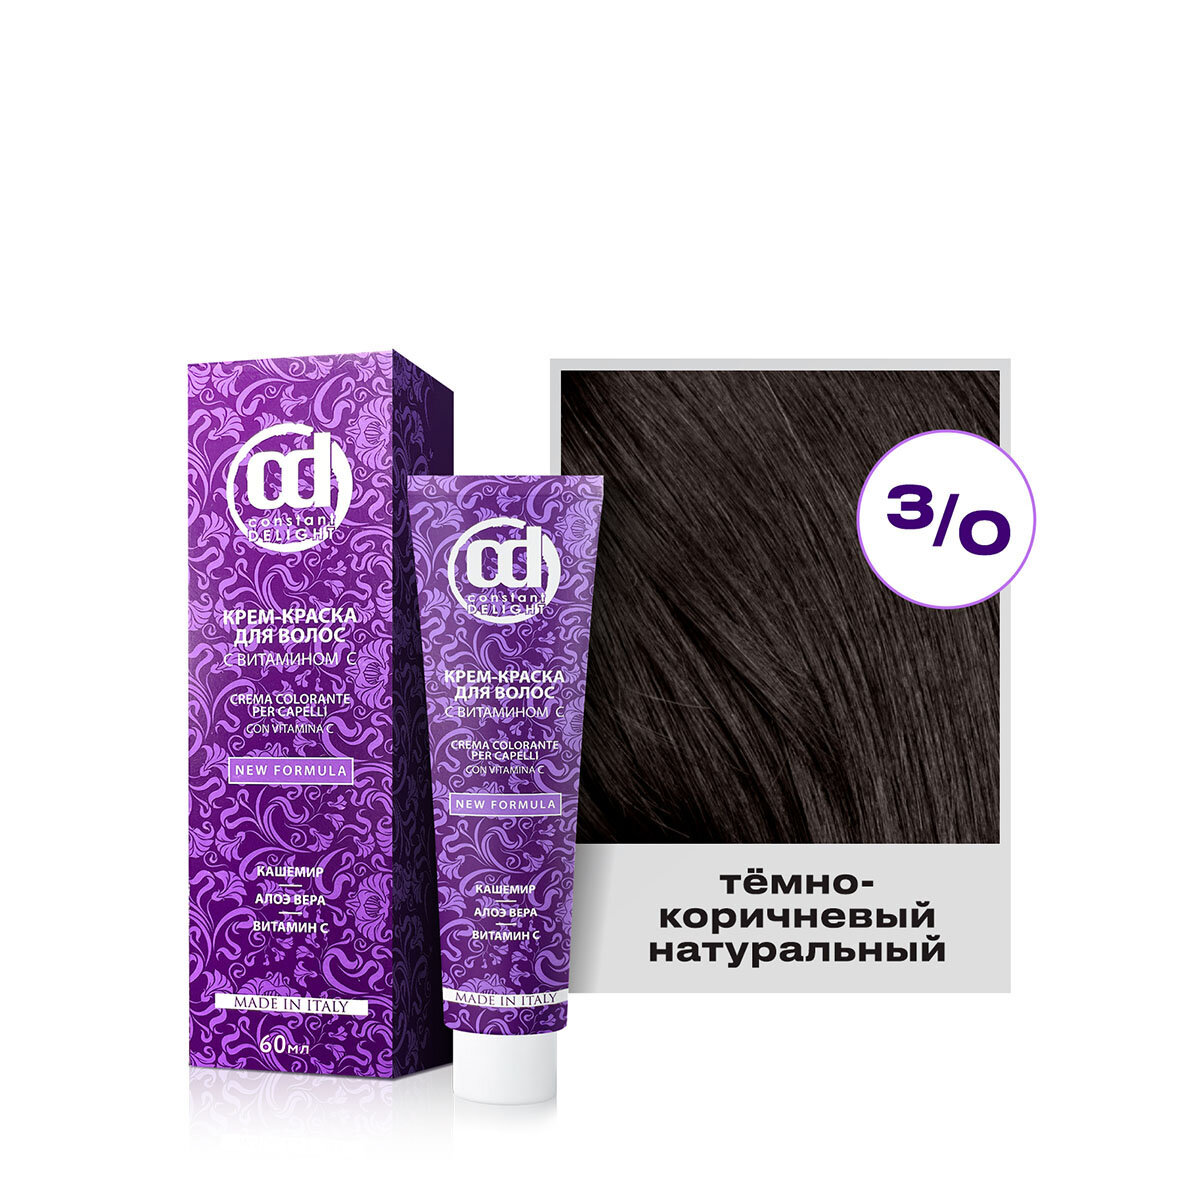 Крем-краска для окрашивания волос CONSTANT DELIGHT 3/0 темно-коричневый натуральный 60 мл